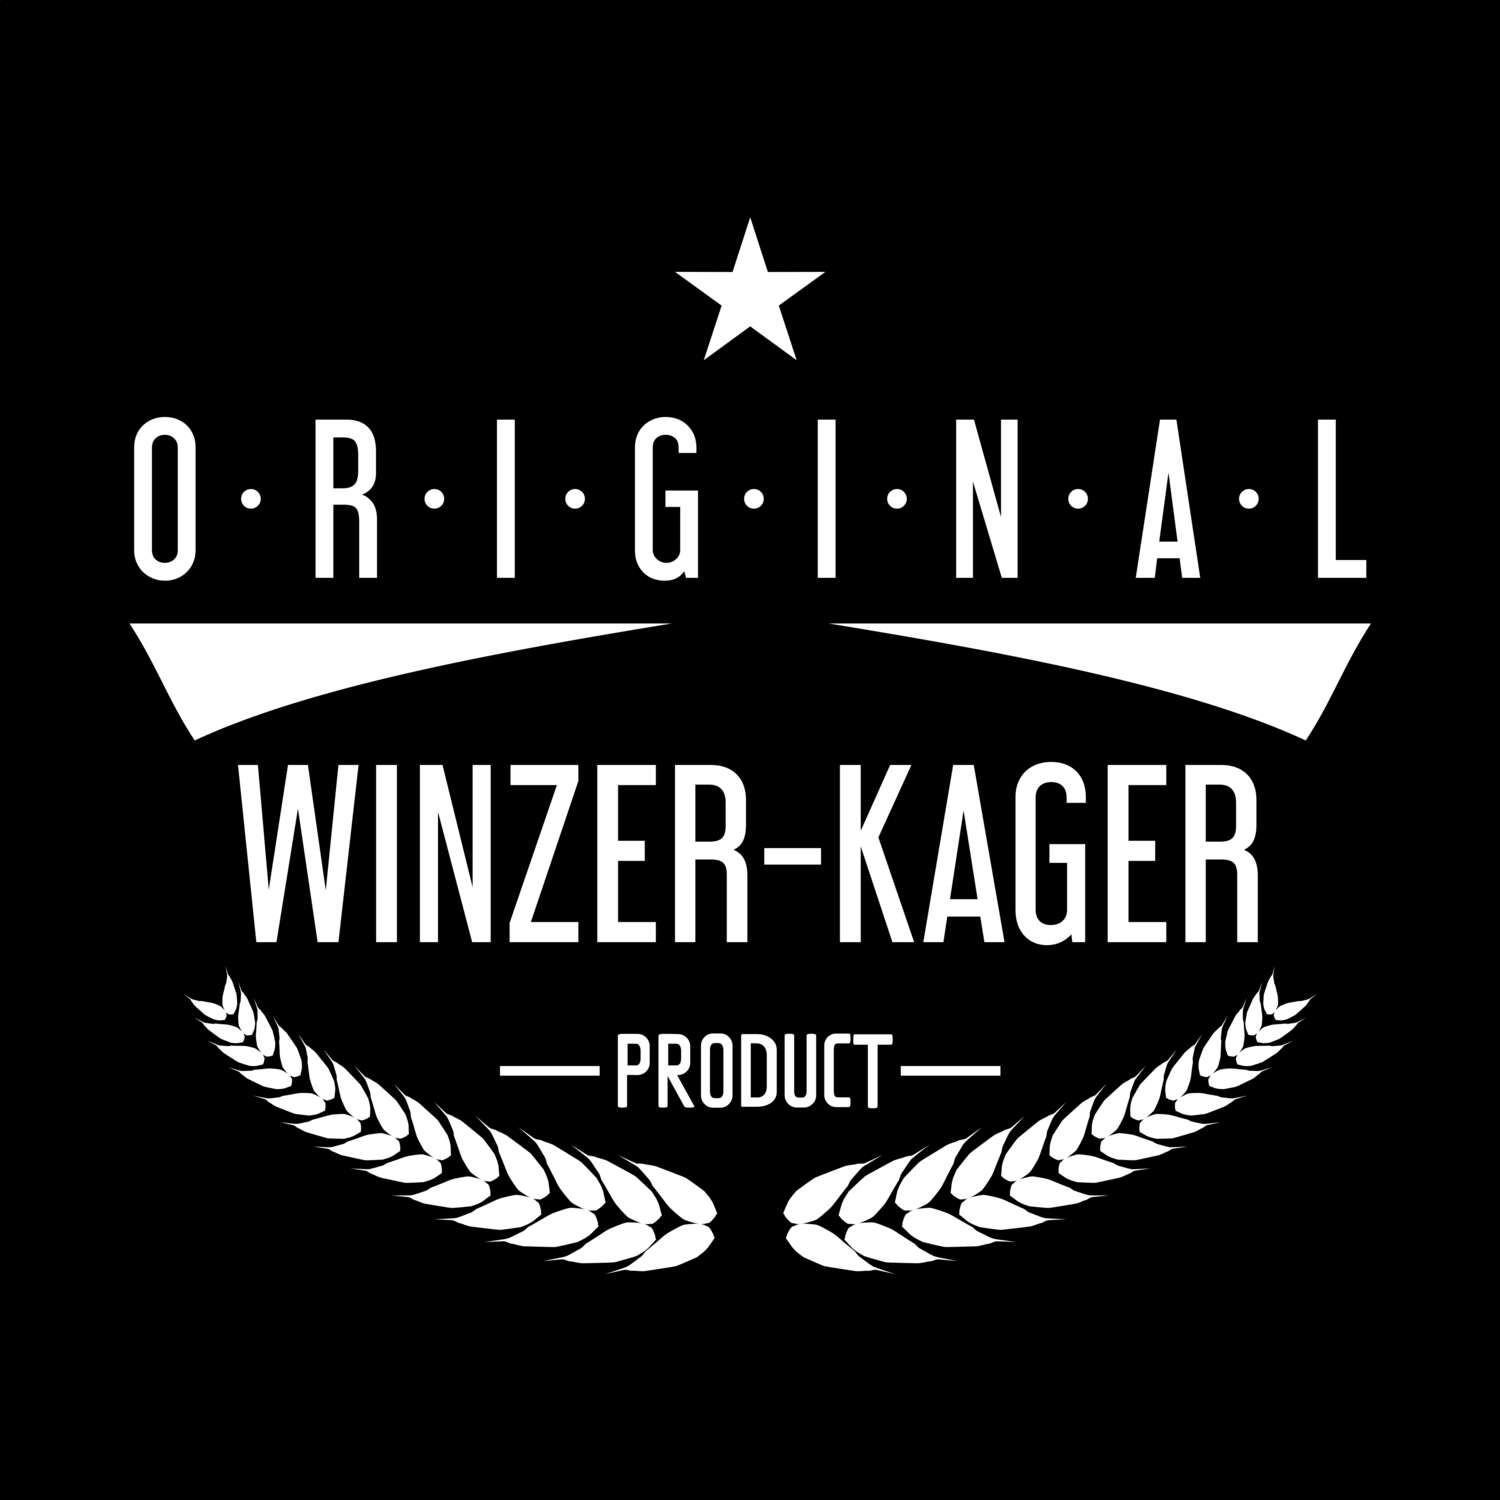 Winzer-Kager T-Shirt »Original Product«